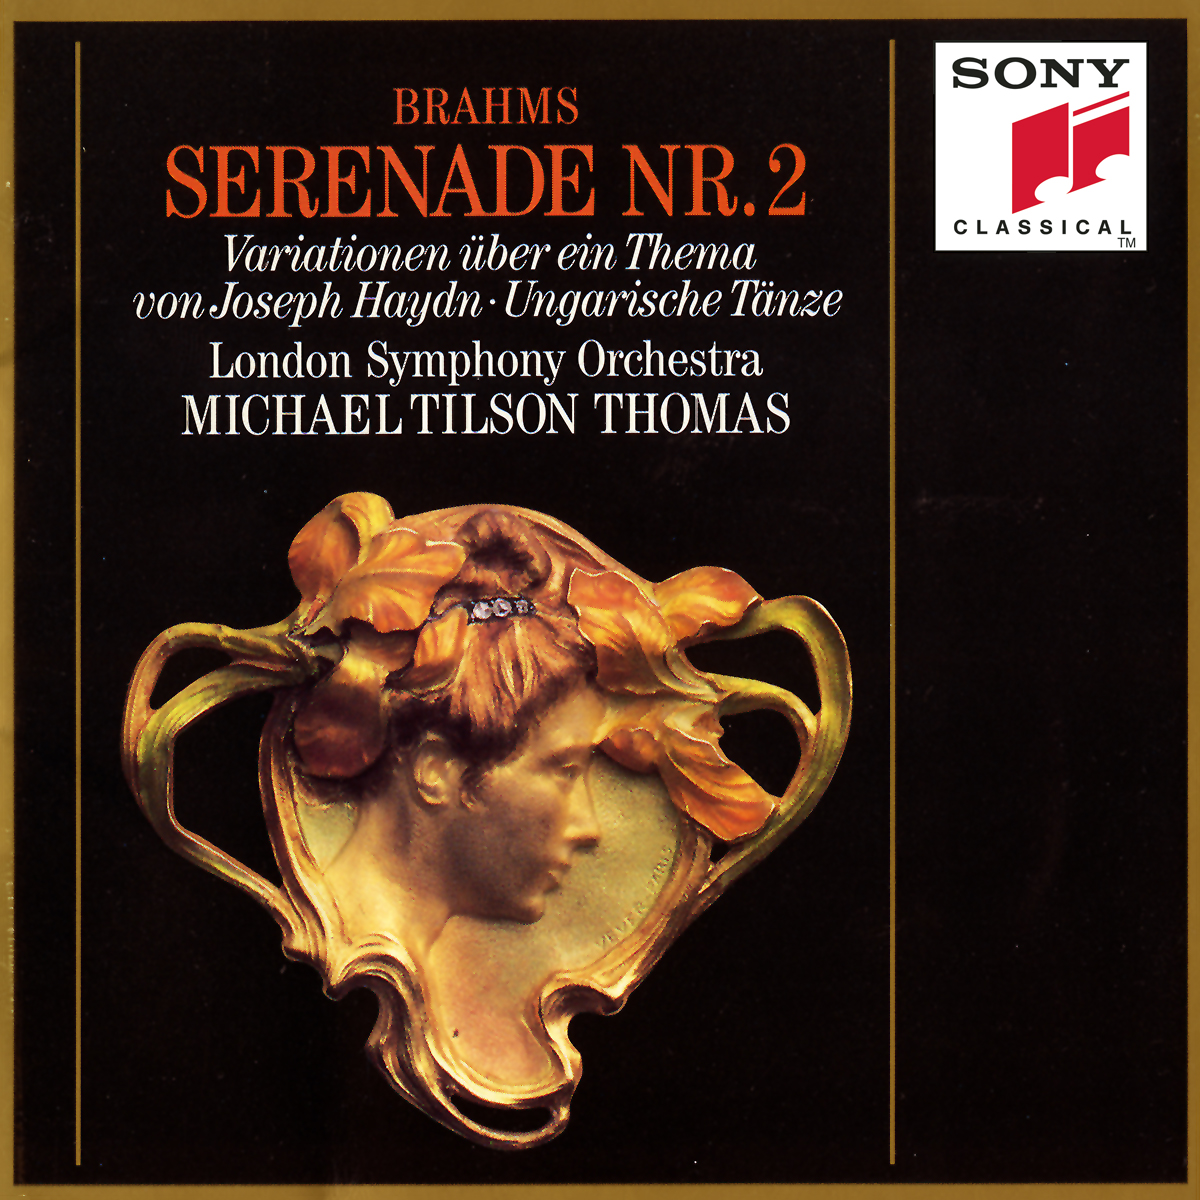 Serenade No. 2 in A Major, Op. 16 for Small Orchestra:III. Adagio non troppo